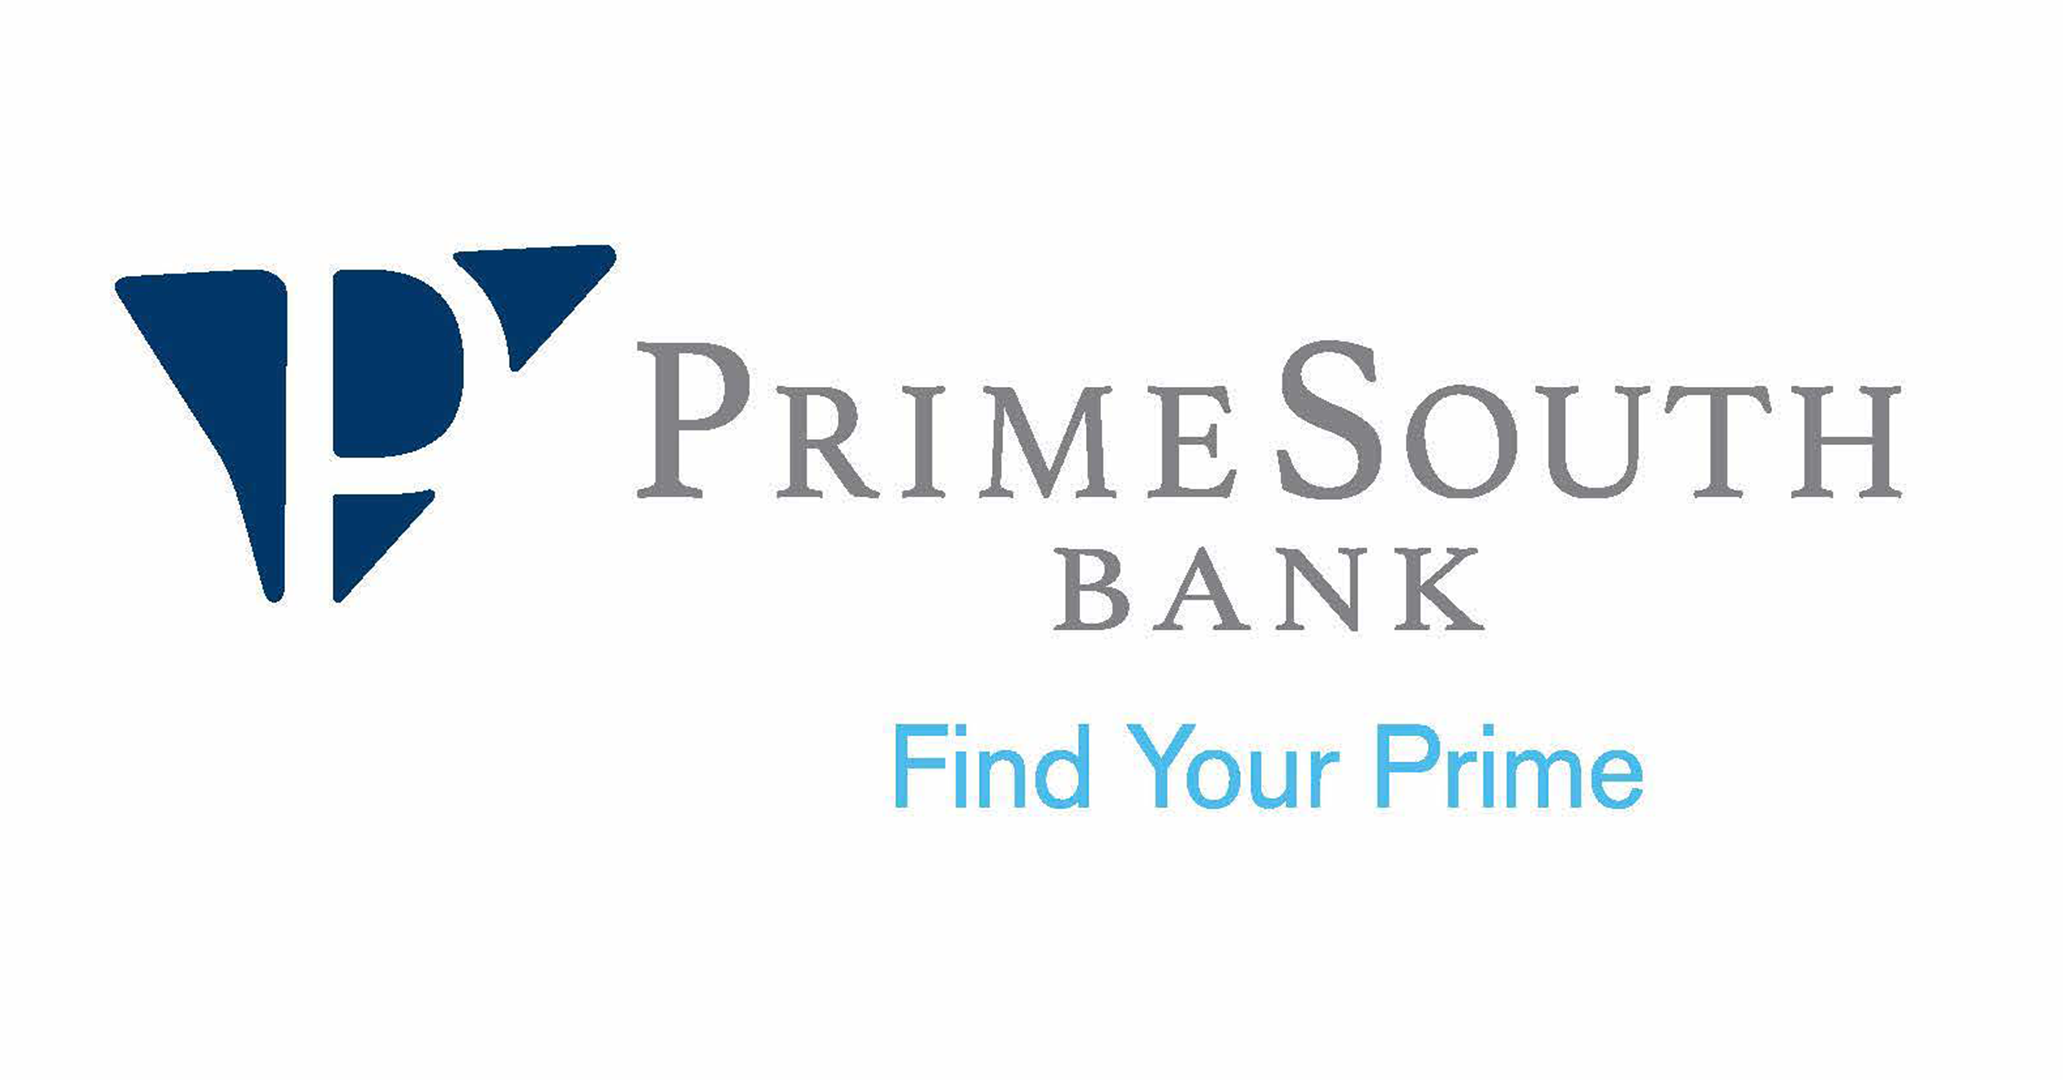 Primesouth Bank